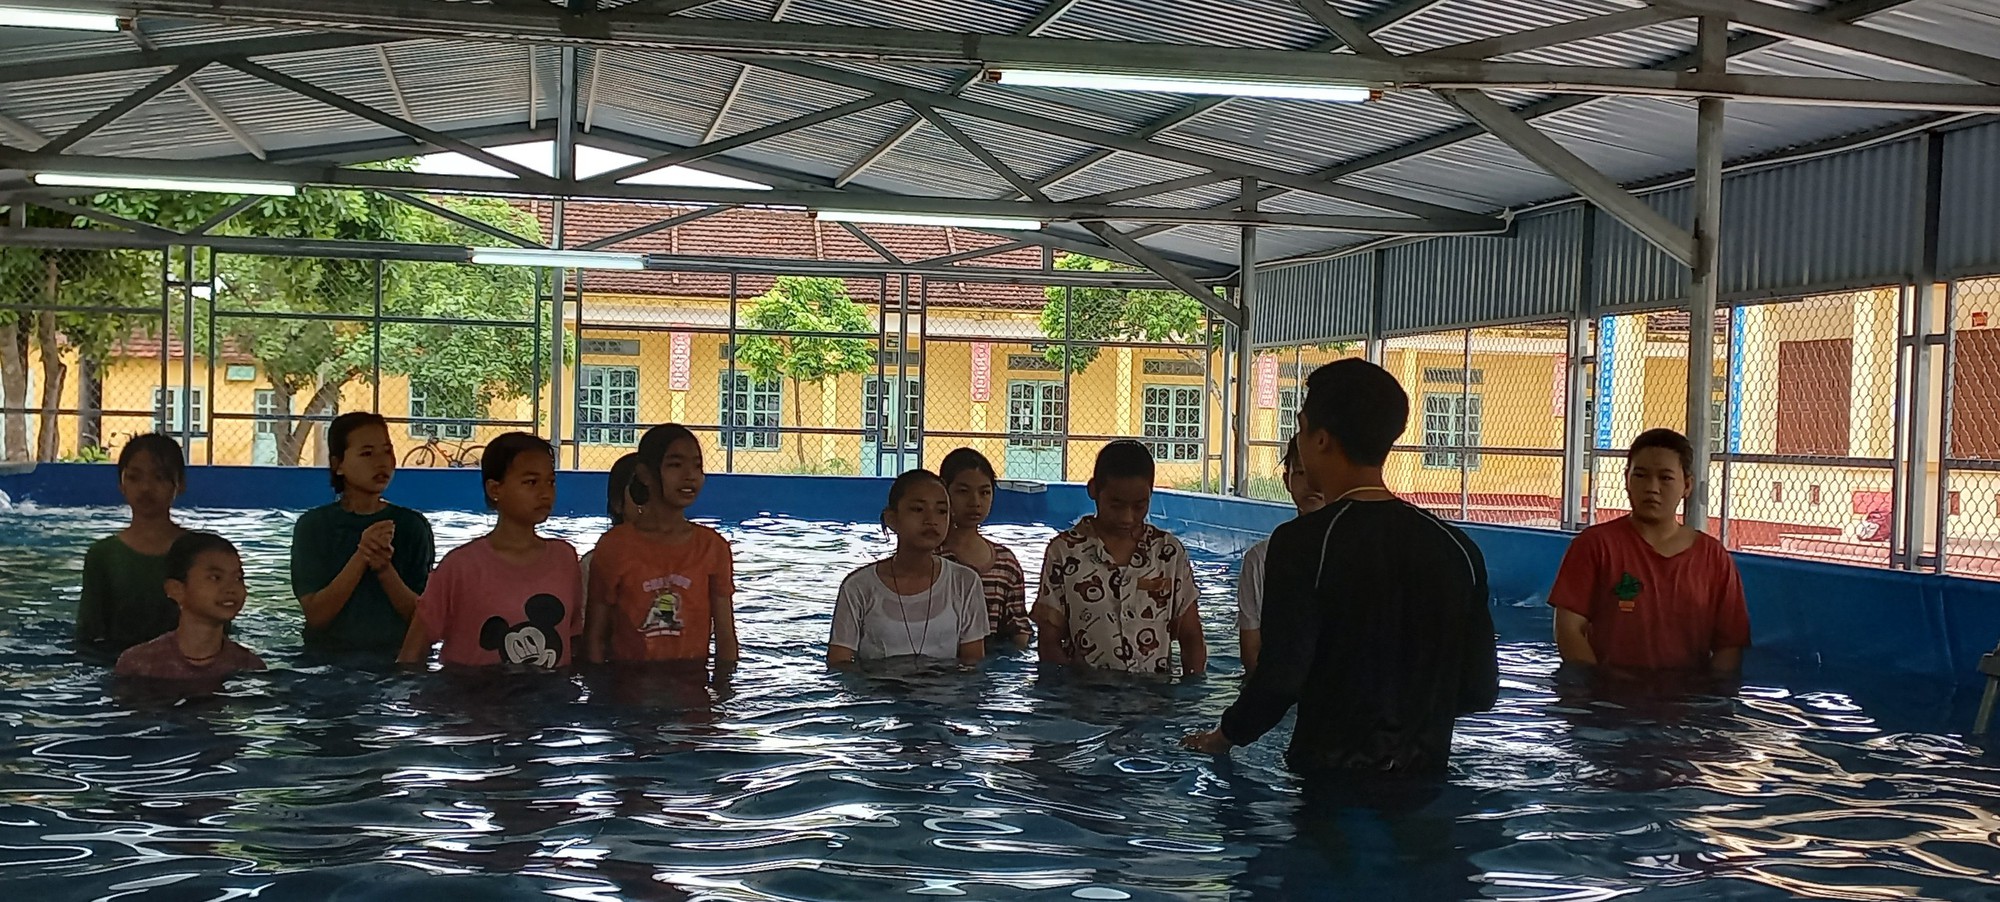 Vụ học sinh đuối nước ở bể bơi nhà trường: Trách nhiệm của các bên liên quan  - Ảnh 2.